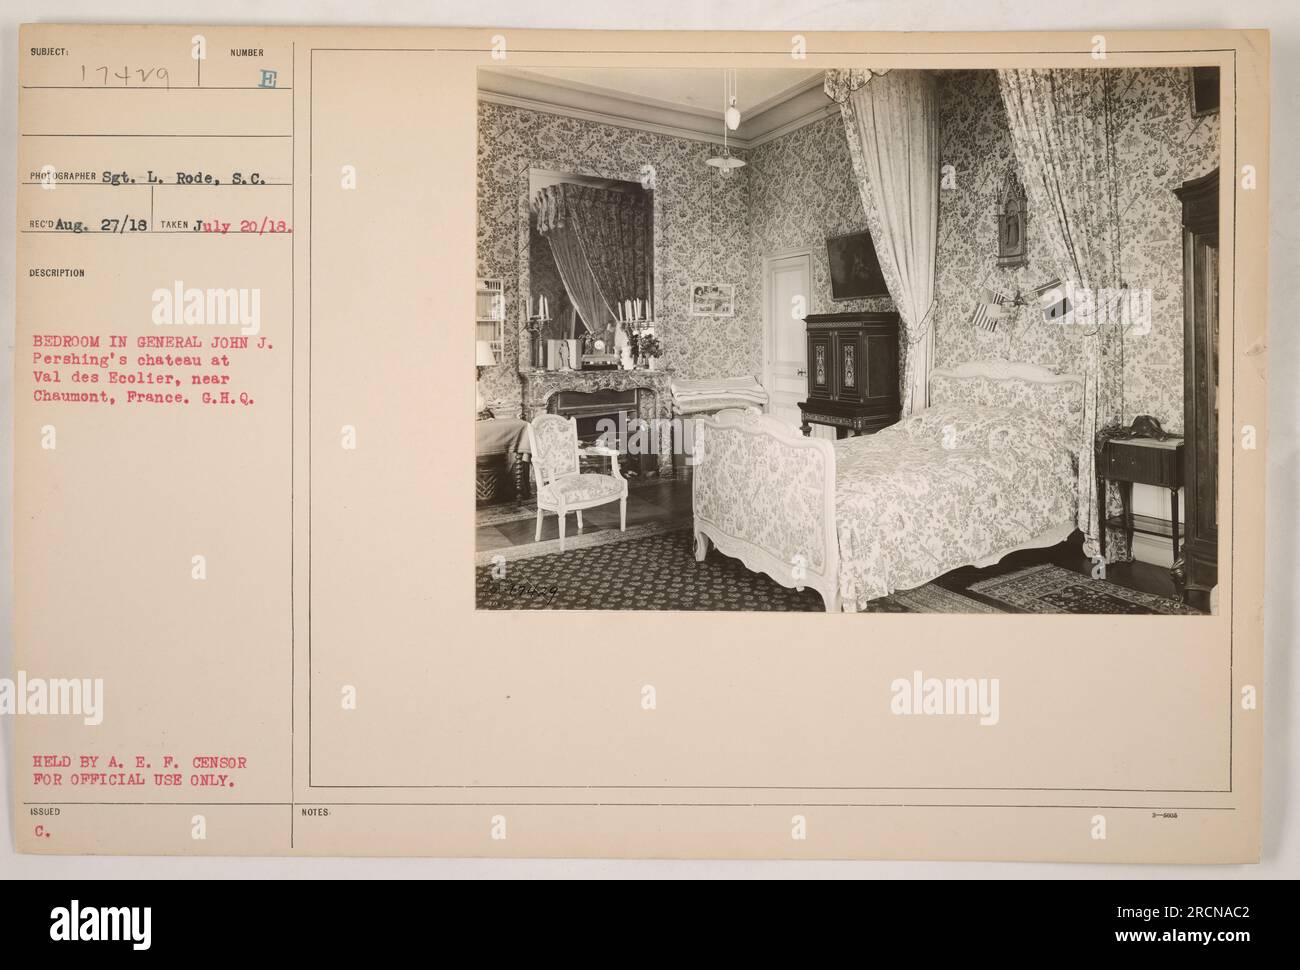 Dormitorio en el castillo del General John J. Pershing en Val des Ecolier, cerca de Chaumont, Francia. La fotografía fue tomada el 20 de julio de 1918 por el Sargento L. Rode, S.C. Forma parte de la colección de A.E.P. Censor para uso oficial solamente. Foto de stock